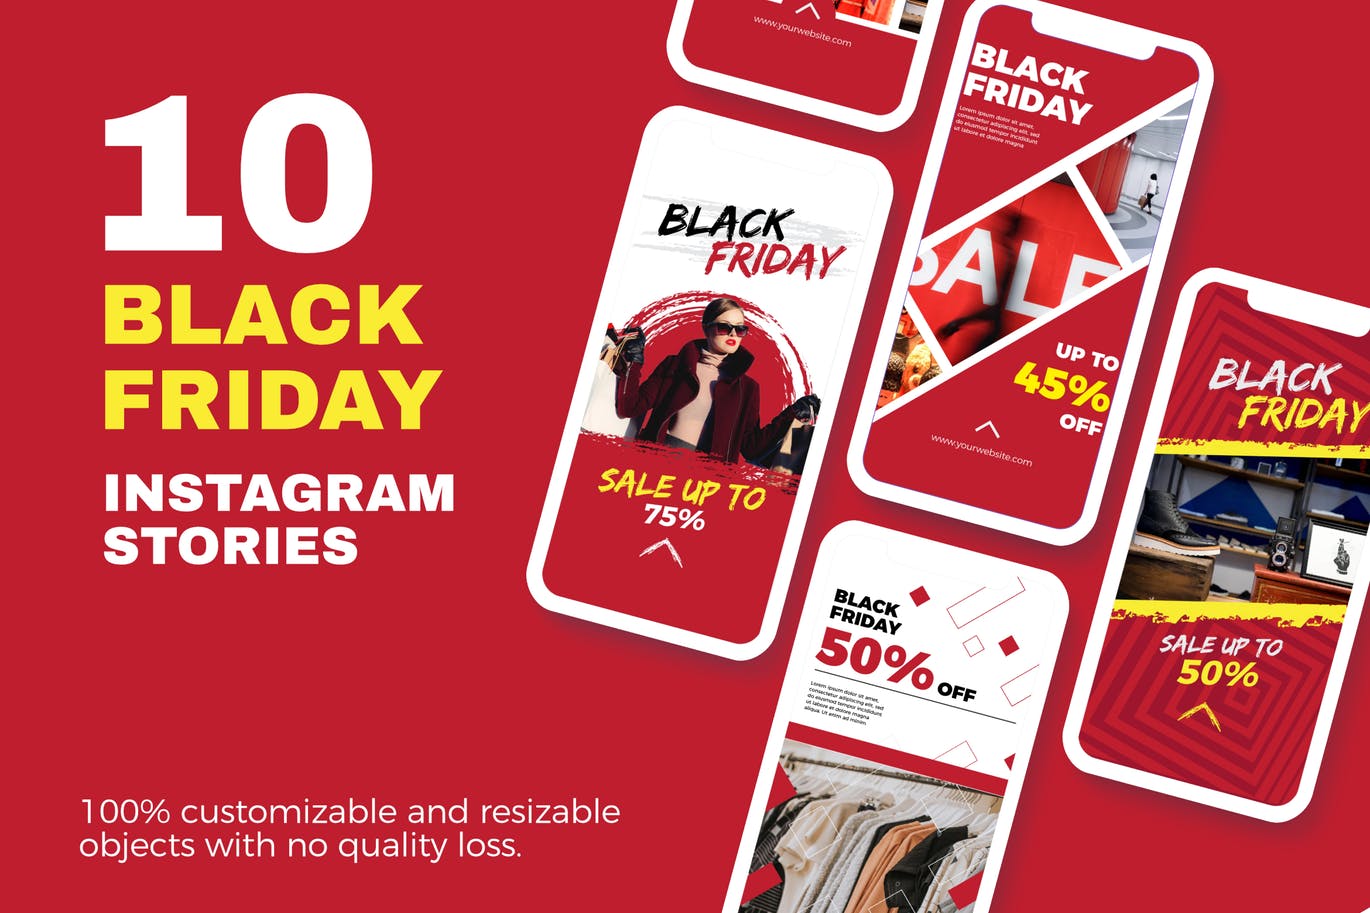 10款Instagram社交平台黑色星期五促销广告设计模板蚂蚁素材精选 Black Friday Instagram Stories插图